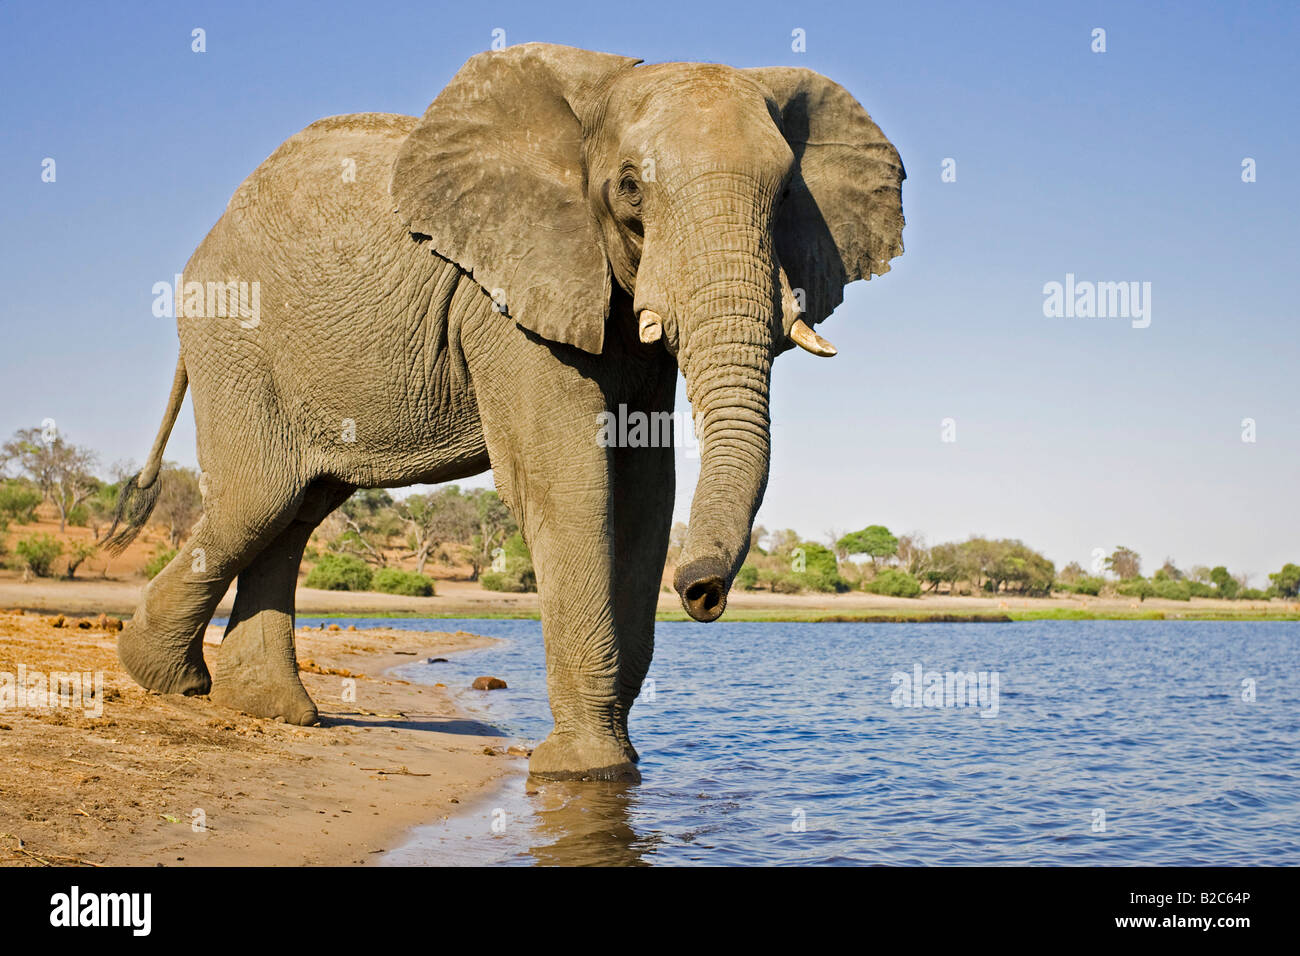 Bush africain Elephant (Loxodonta africana) dans la rivière Chobe, parc national de Chobe, Botswana, Africa Banque D'Images